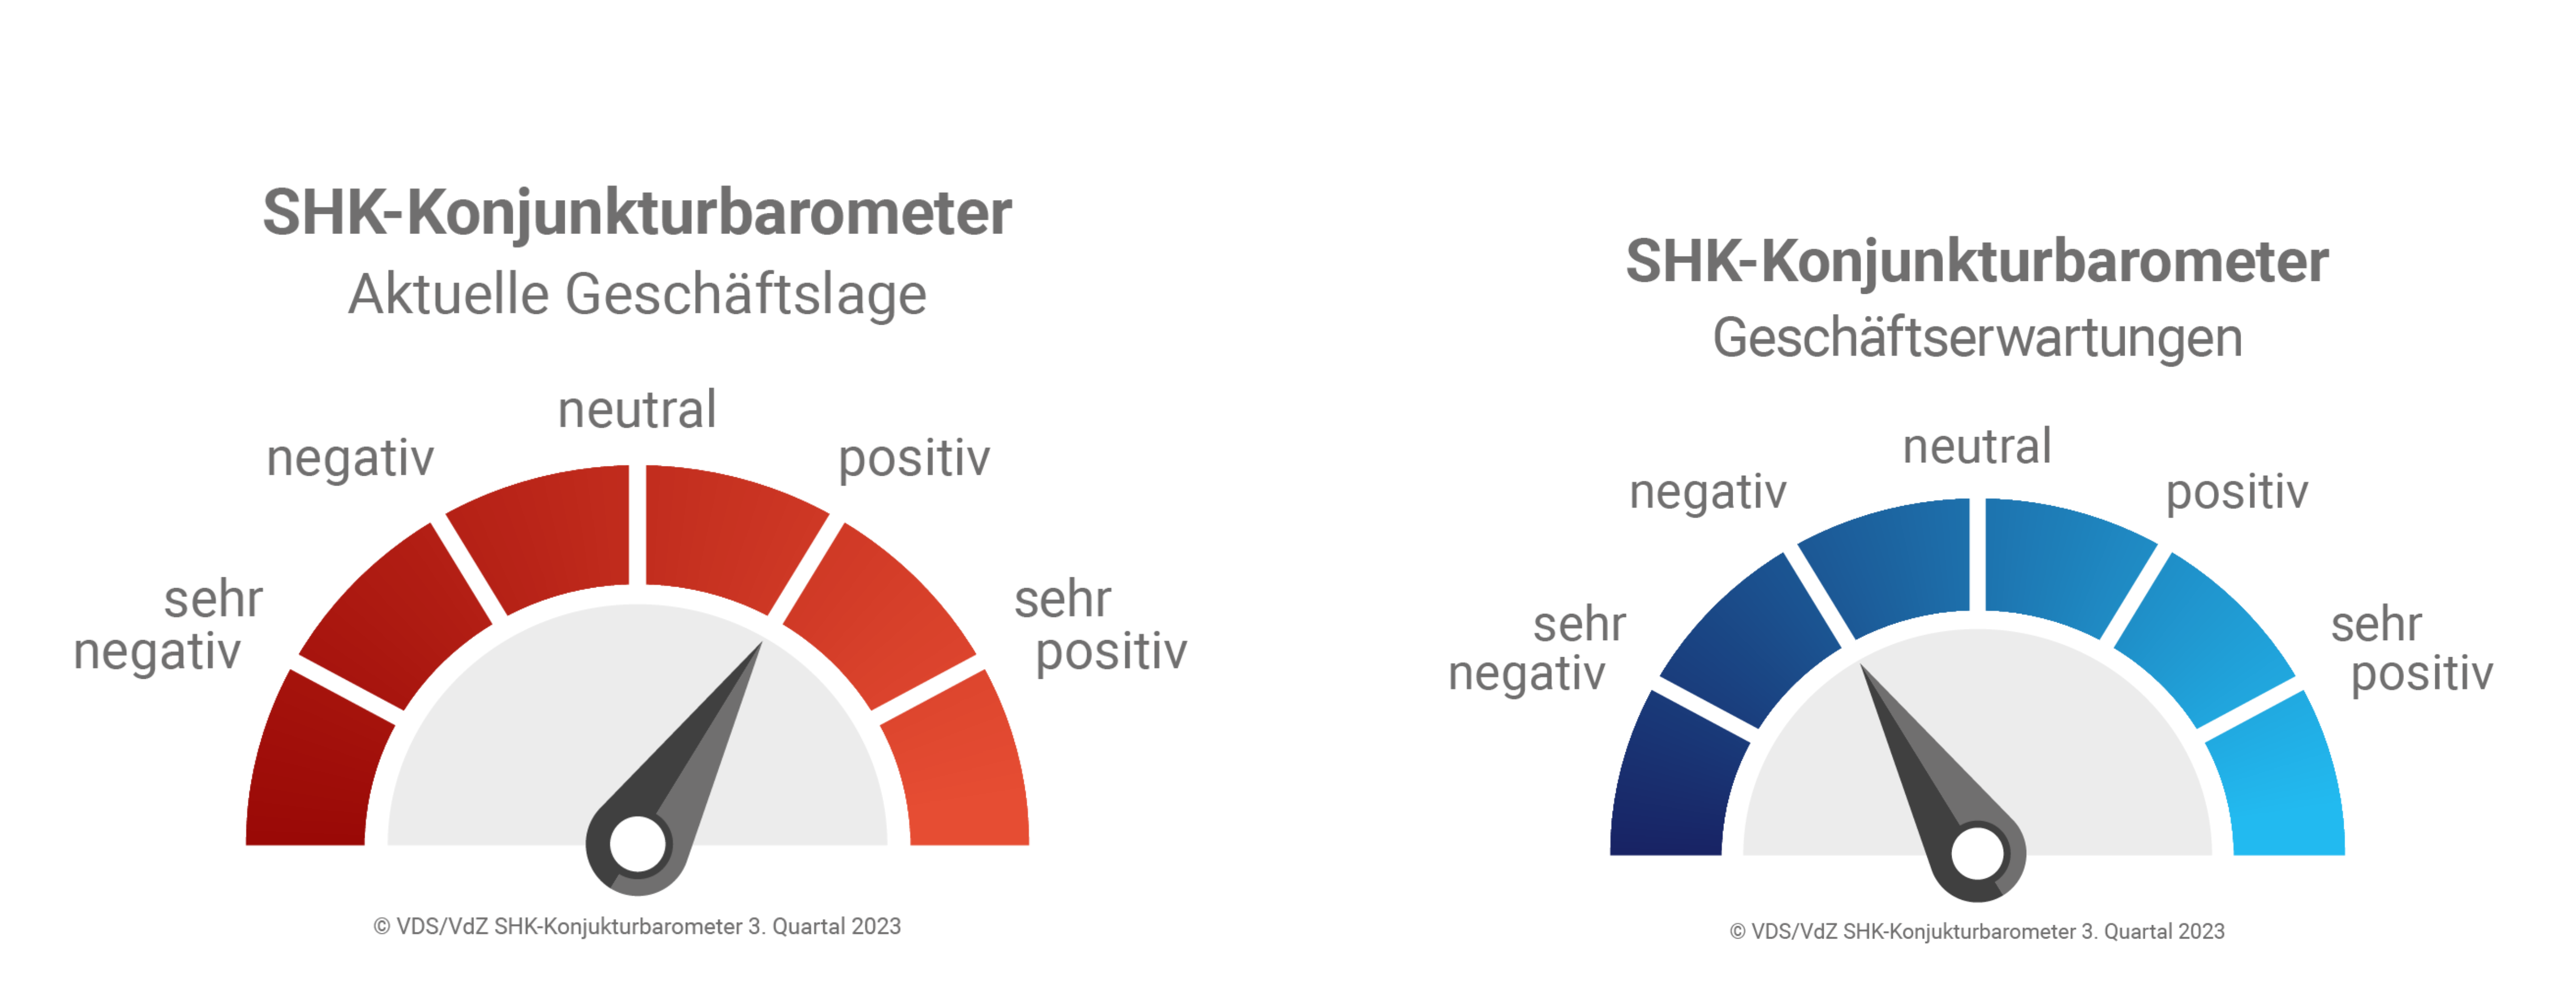 SHK-Konjunkturbarometer Tacho (Quelle: VDS/VdZ-Konjunkturbarometer 3. Quartal 2023)